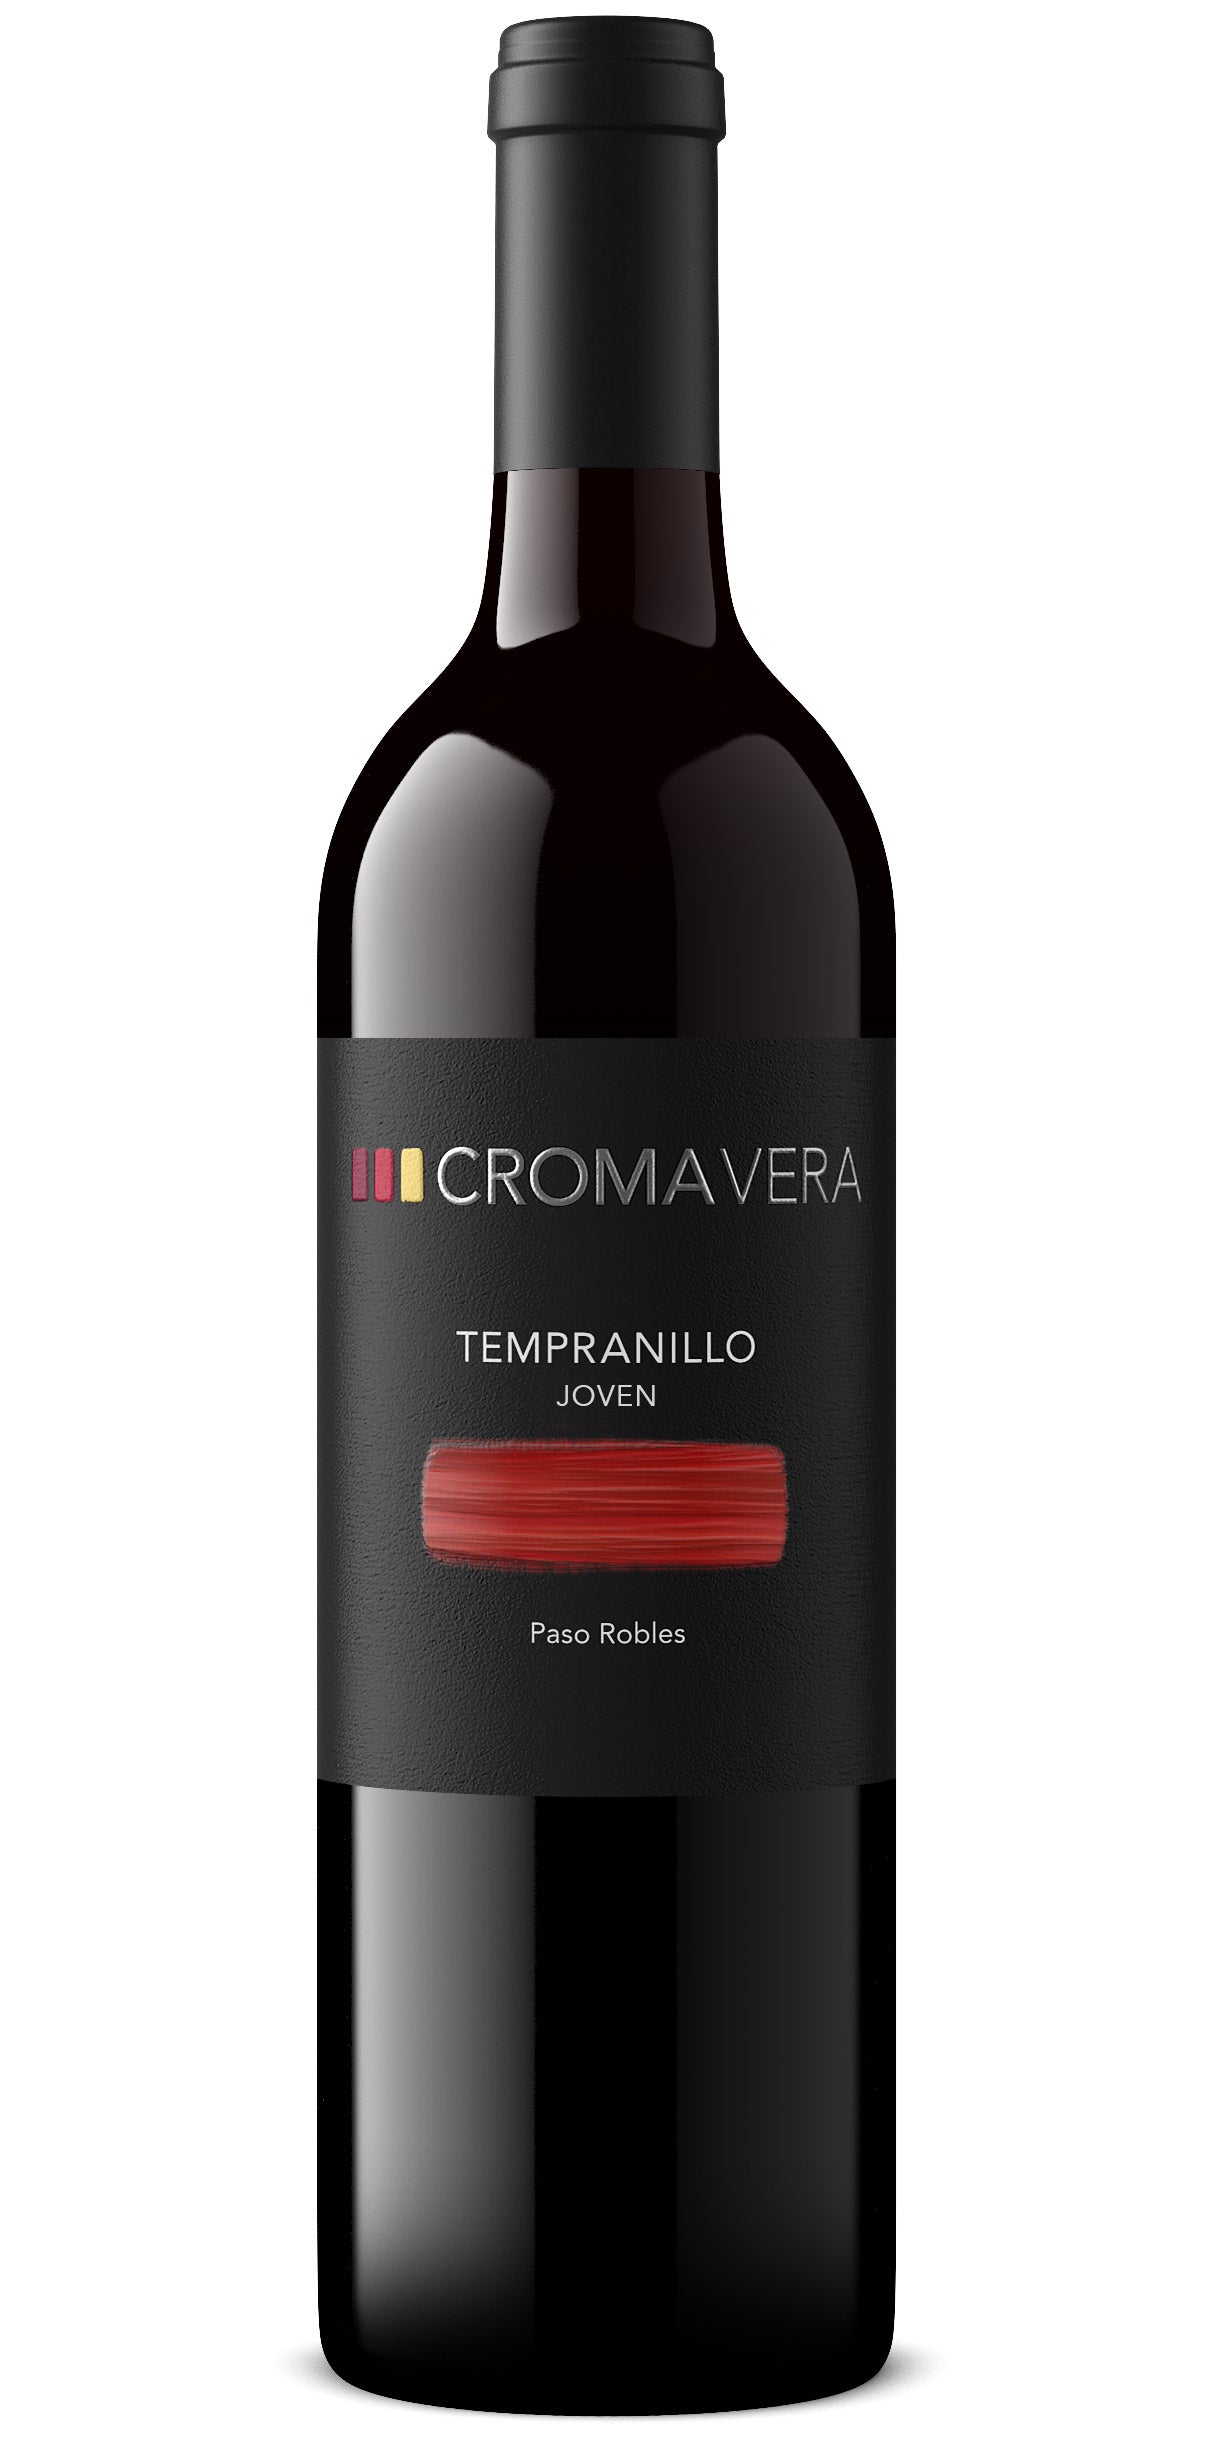 A bottle of Croma Vera 2017 Tempranillo Joven wine